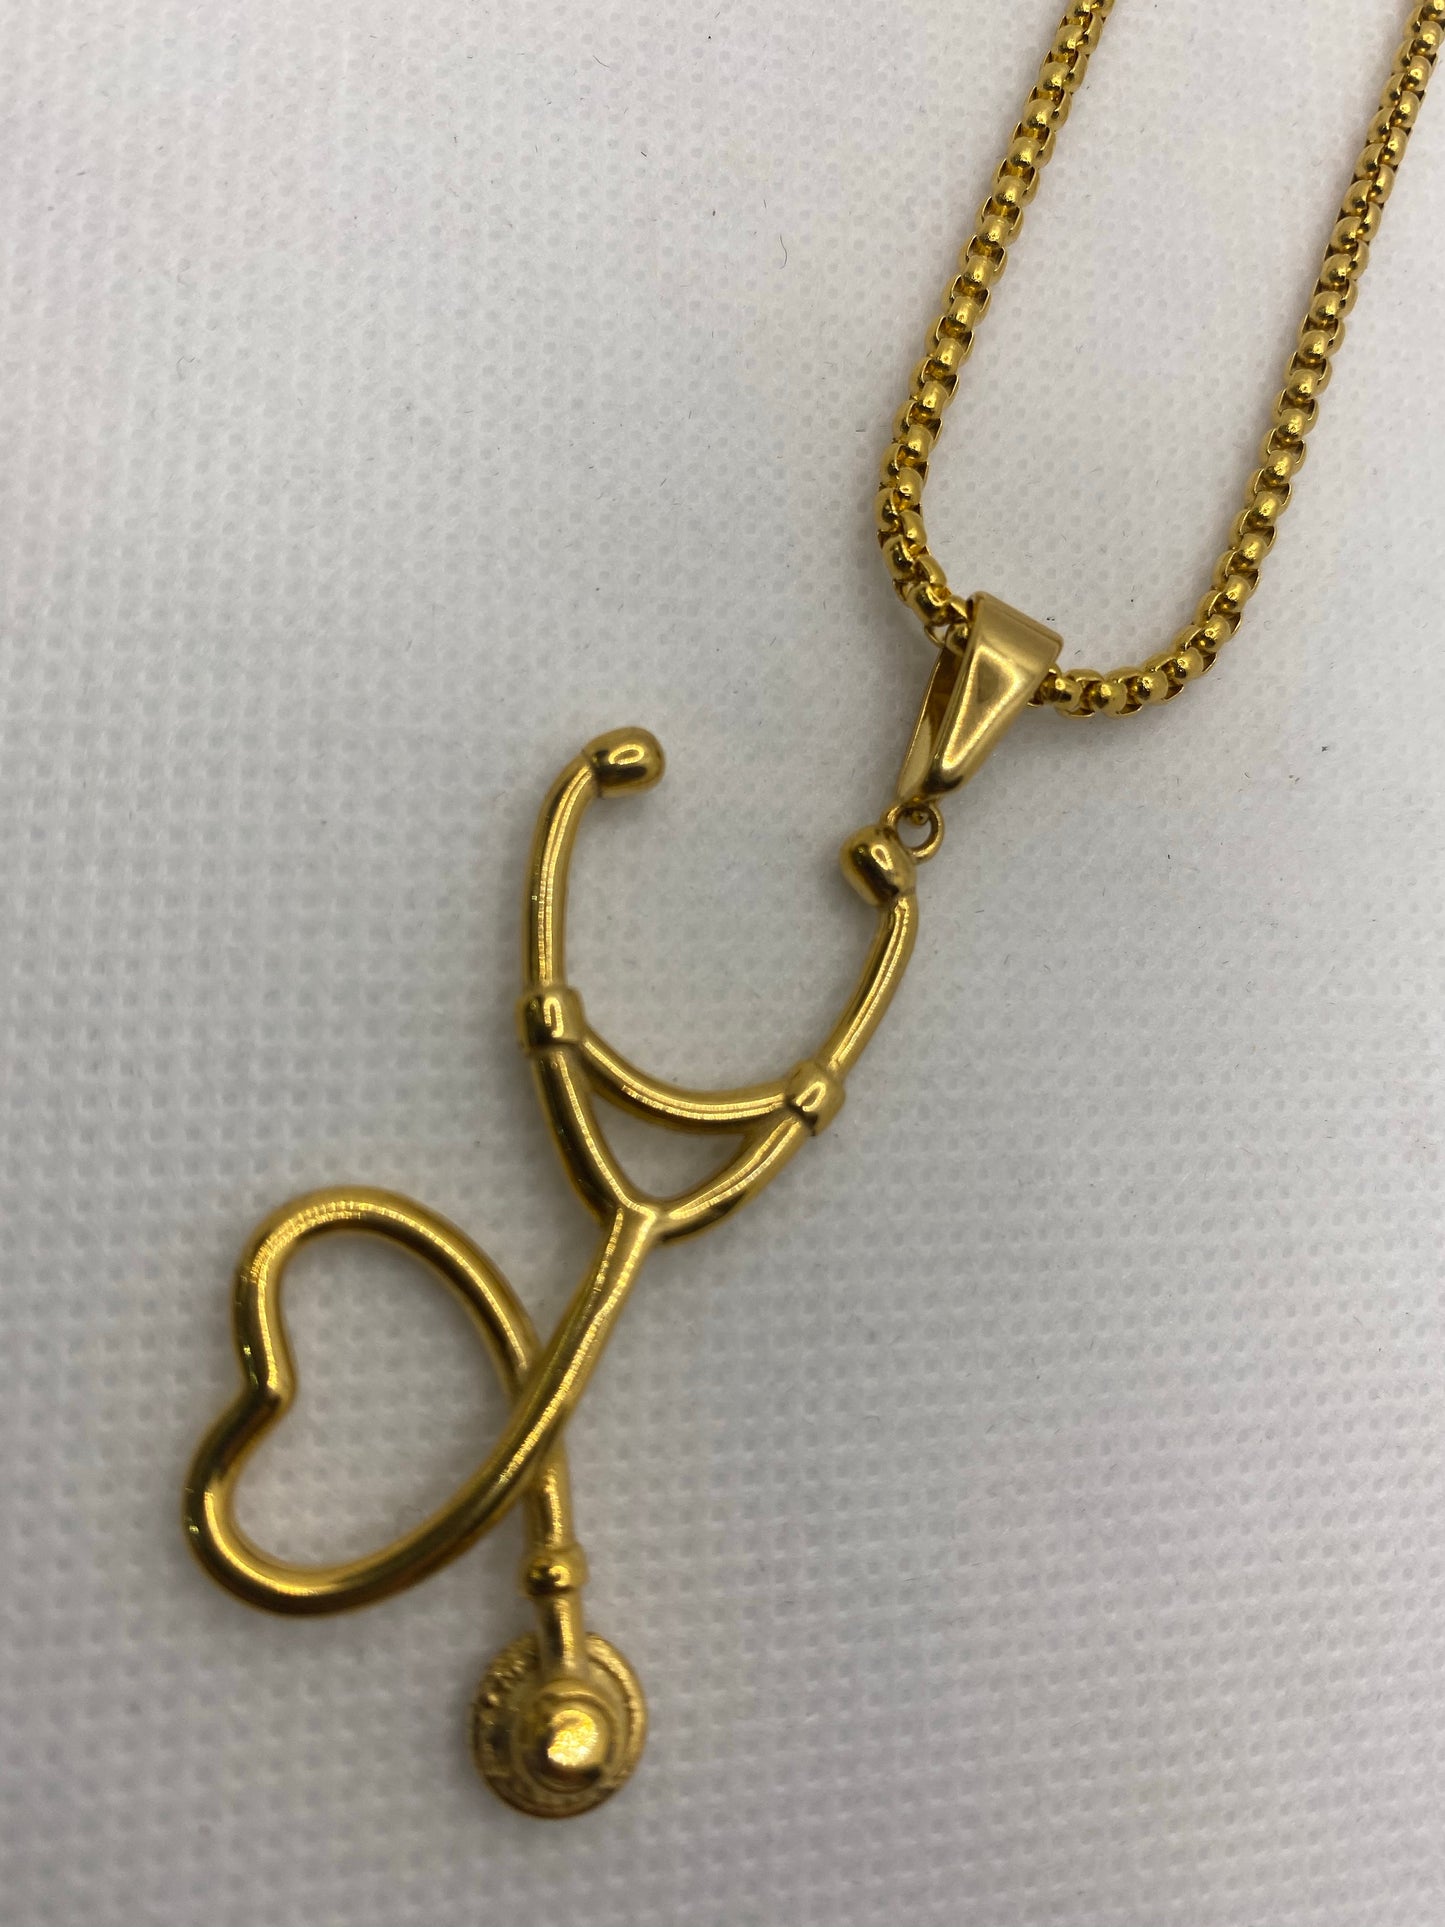 Stethoscope necklace